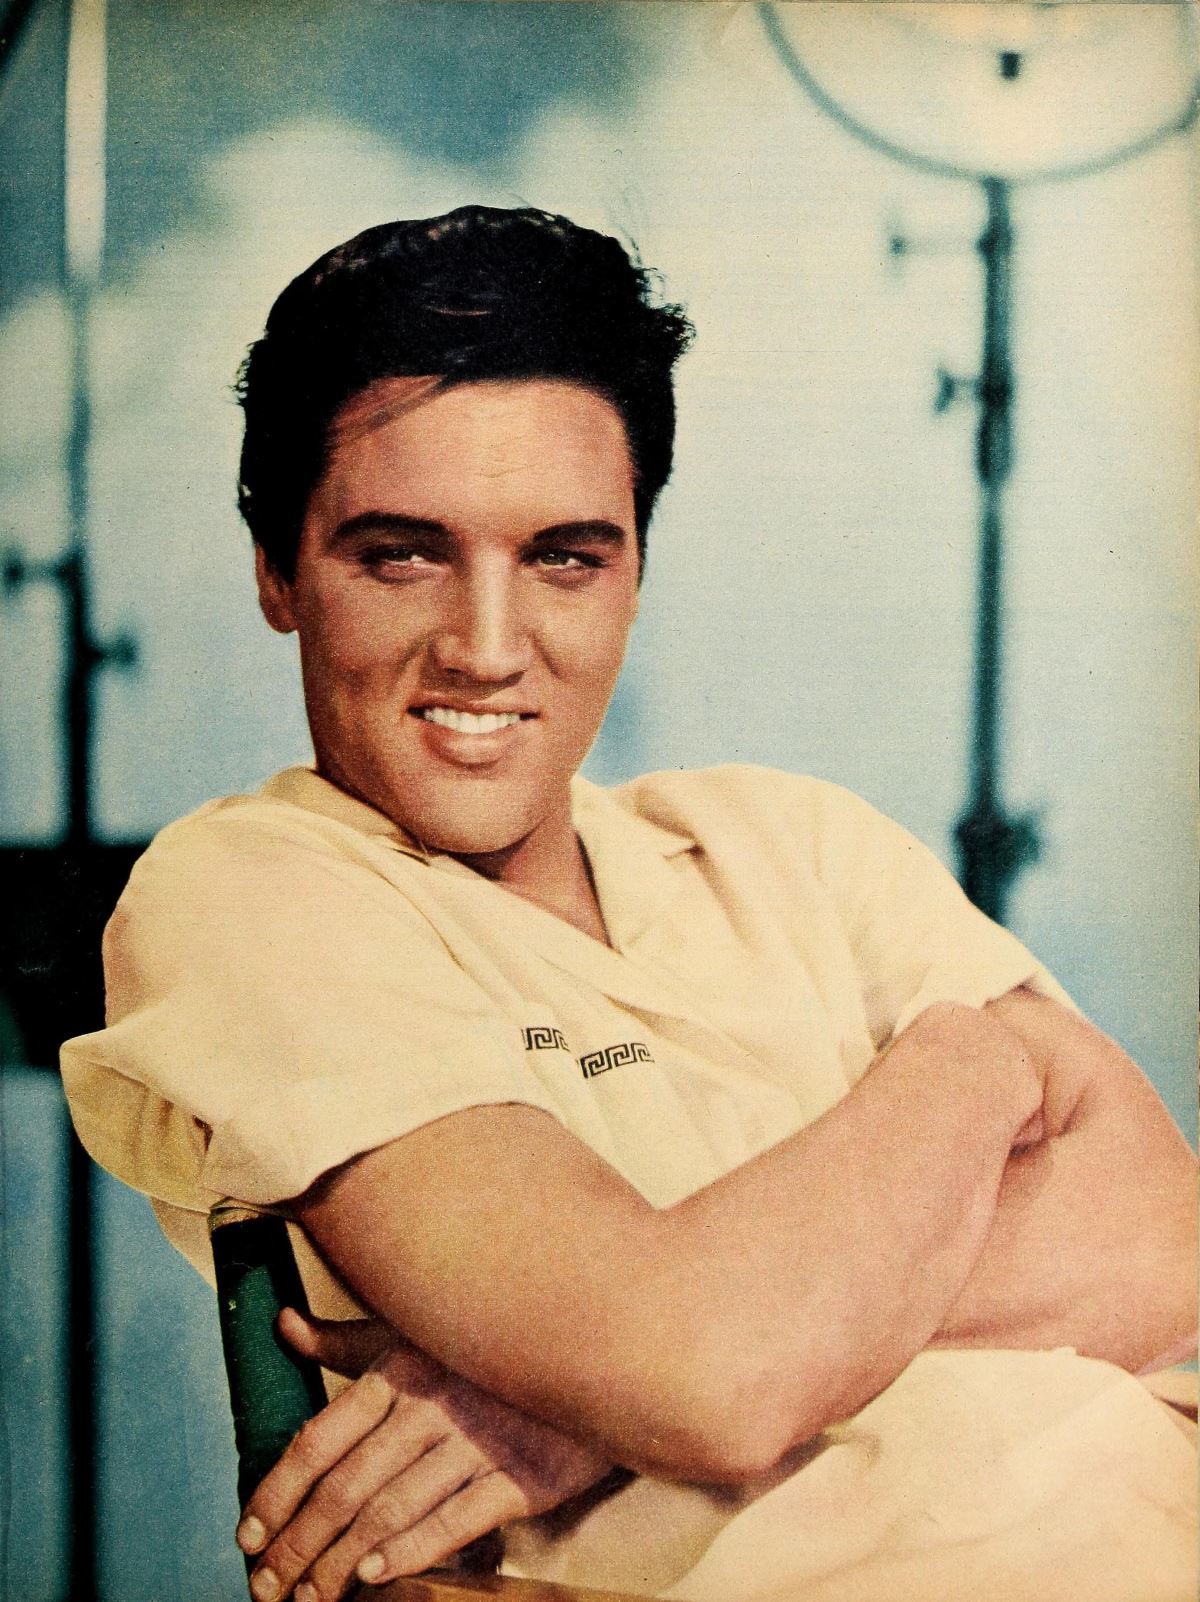 <p><strong>6. İlk plağı annesine hediyeydi</strong></p> <p><strong>1953'te</strong> Presley ilk demo kaydını <strong>Memphis, Tennessee'deki Sun Records'ta,</strong> öncelikle annesi Gladys'e doğum günü hediyesi olarak kaydetti. Plak şirketinin sahibi Sam Phillips, onun sesinden ve benzersiz tarzından etkilenmiş ve ona bir albüm anlaşması yapmıştı. Sam, Presley'i bazı yerel müzisyenlerle bir araya getirdi ve Presley'in 1954'te çıkan ilk single'ı "<strong>This's All Right"ı</strong> kaydettiler. Bir <strong>rock'n roll</strong> sanatçısı olarak ünlendi.</p> <p>Elvis, kısa süre sonra müzik kariyerinin geri kalanında önemli bir rol oynamaya devam eden<strong>'Albay' Tom Parker</strong> olarak bilinen bir organizatör ile tanıştı ve yerel bir canlı radyo programında düzenli olarak yer almaya başladı.</p>